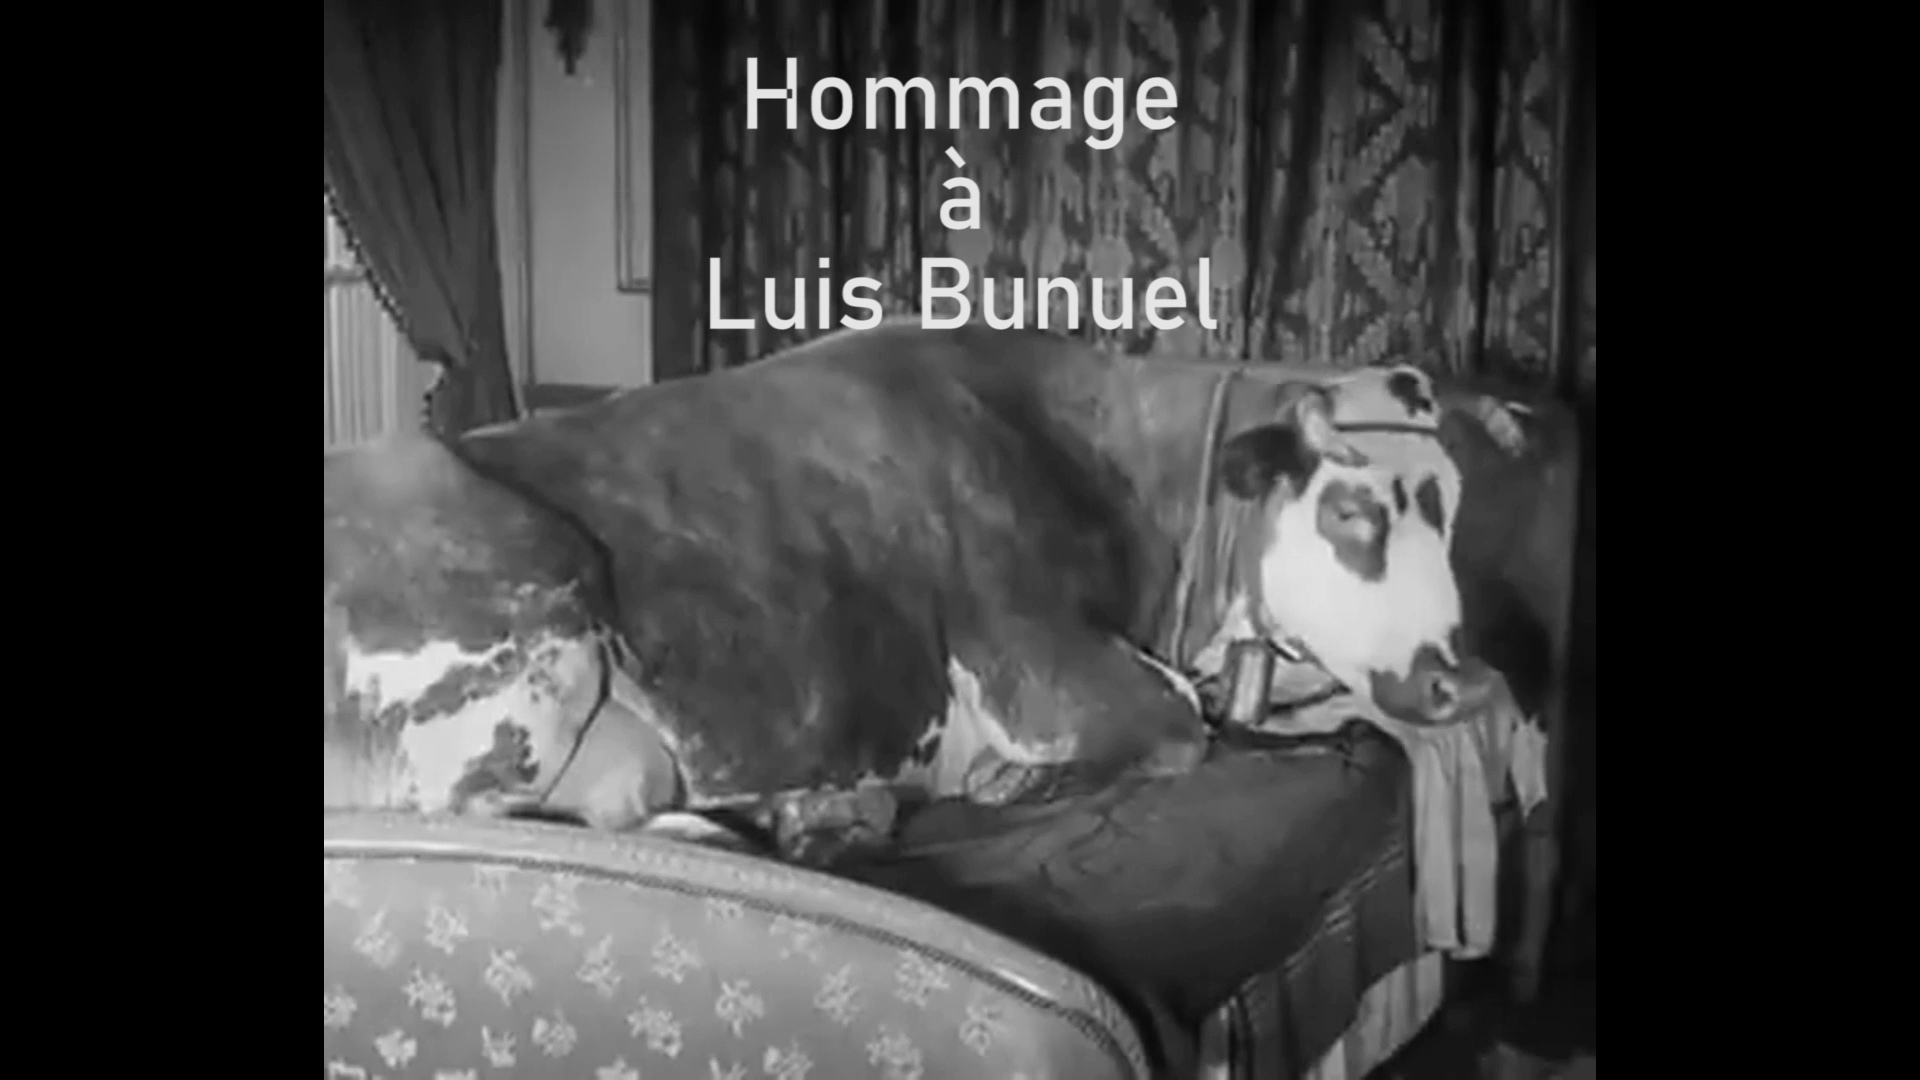 Hommage aan Luis Bunuel op Youtube